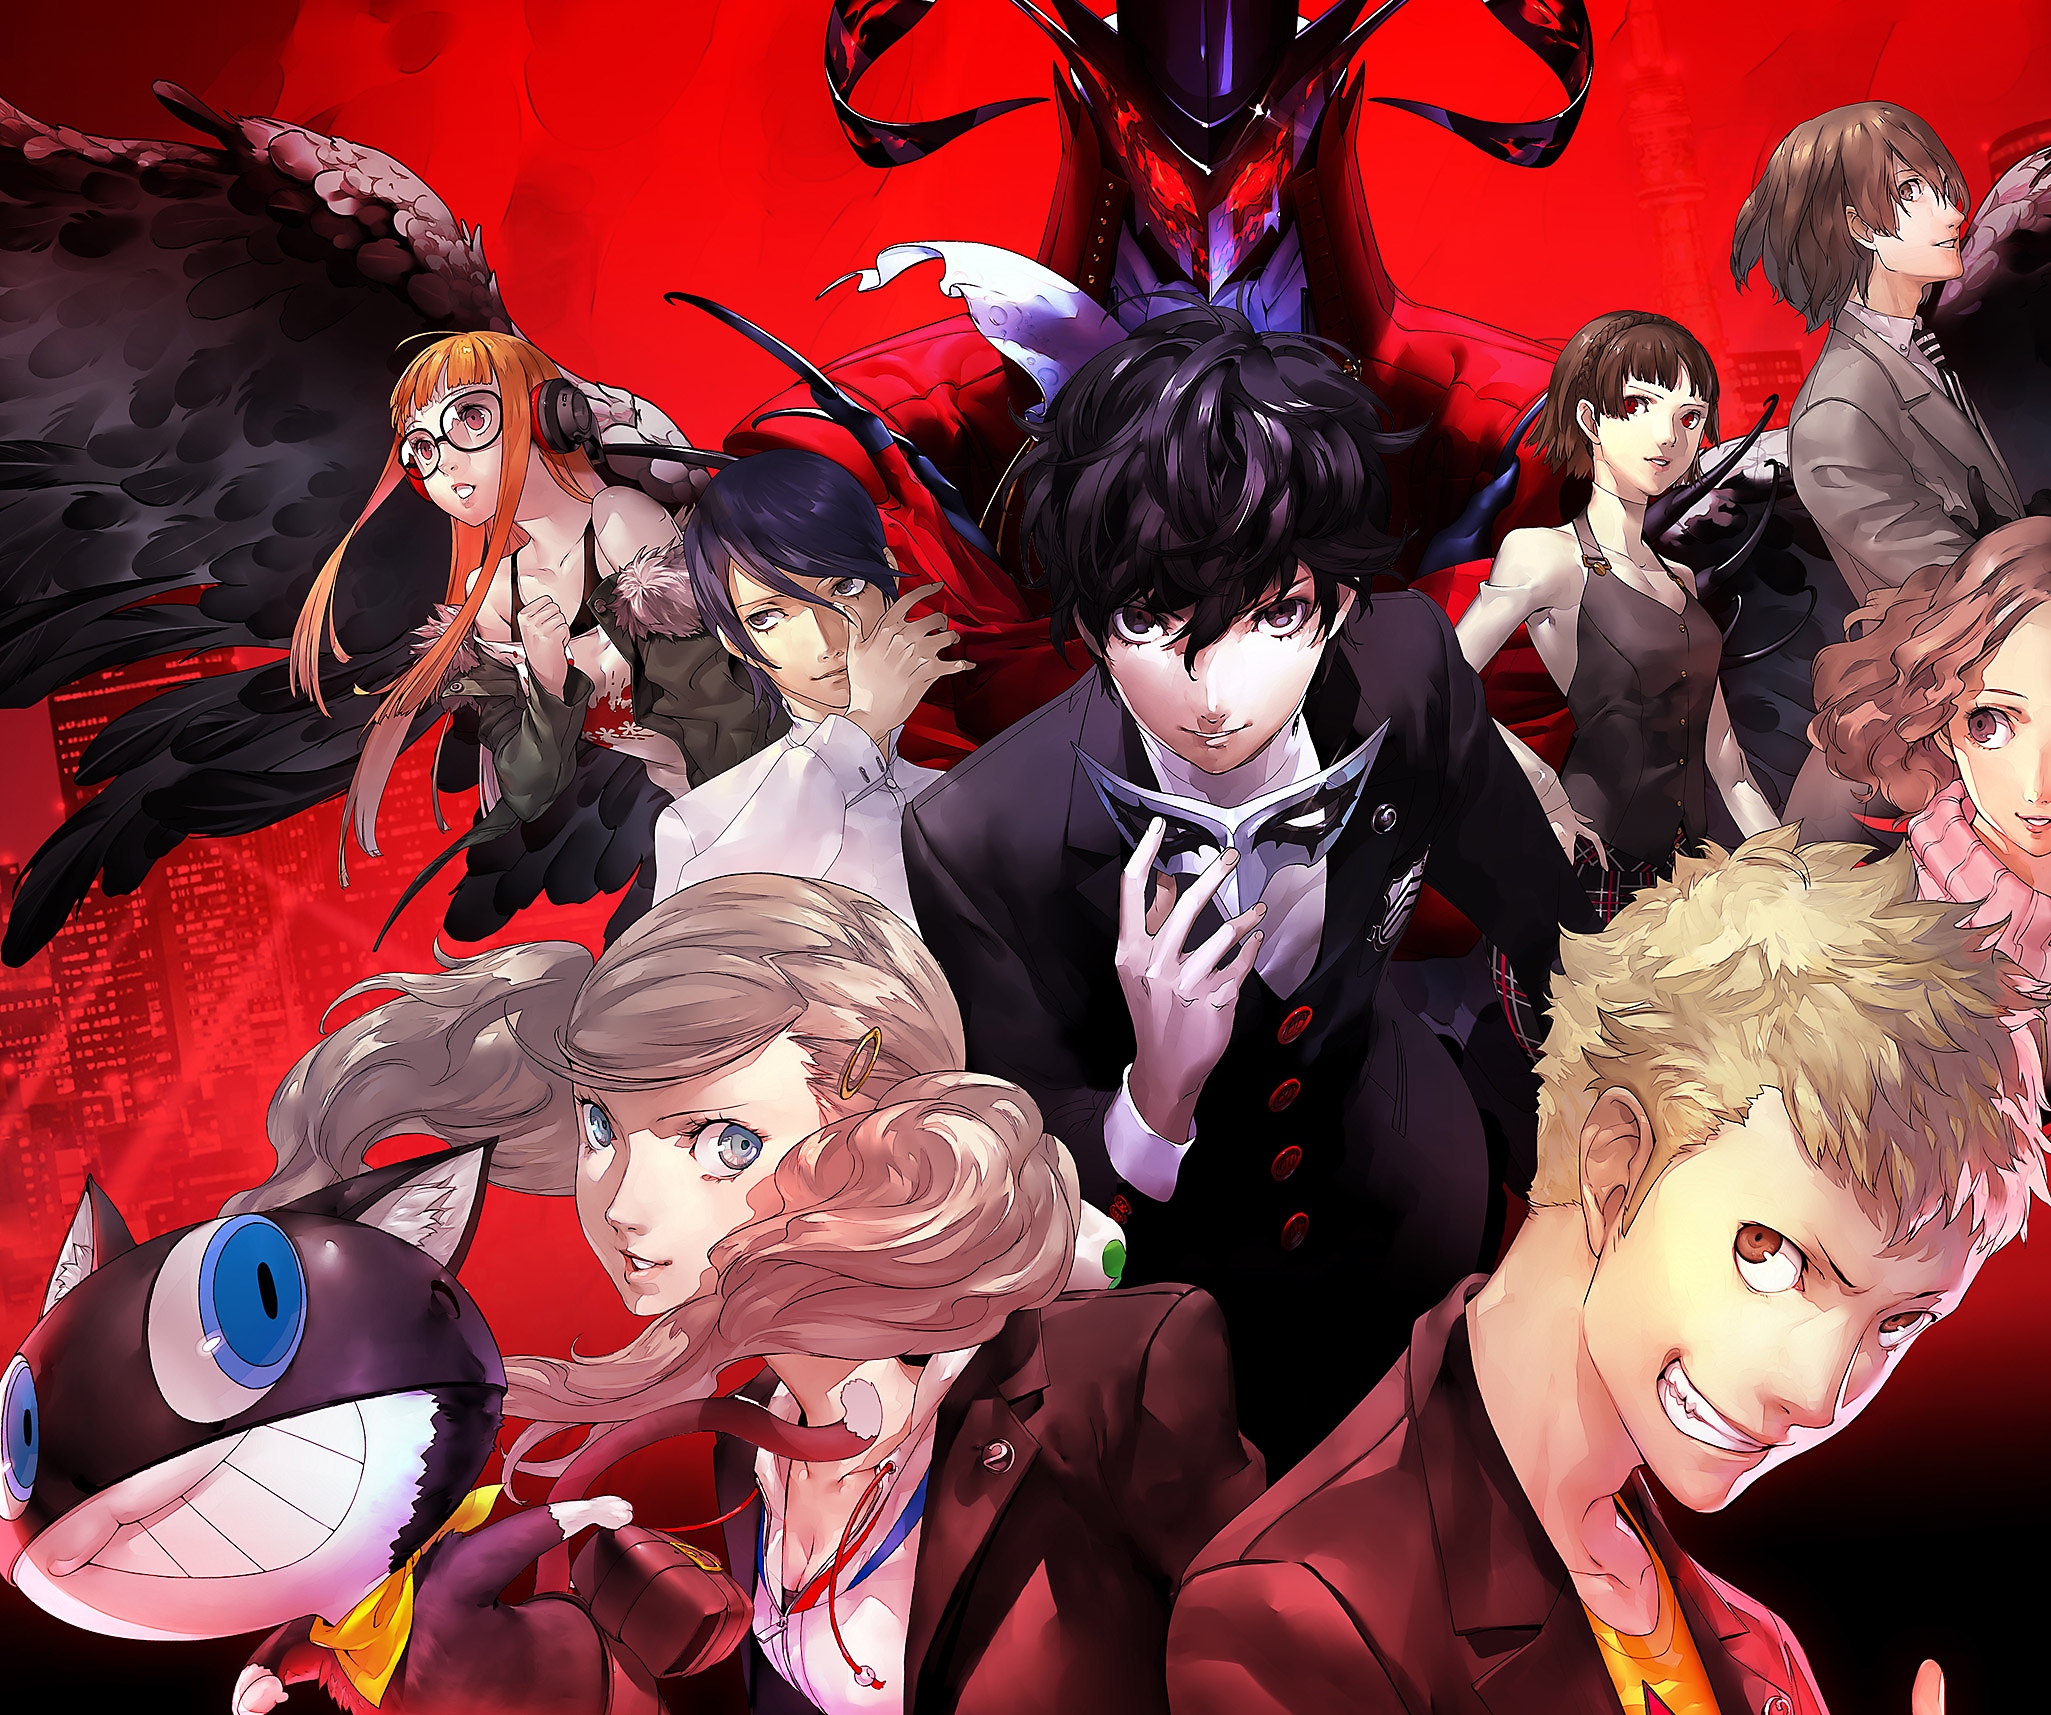 Persona 5-afbeelding van een groep hoofdpersonages tegen een rode achtergrond.